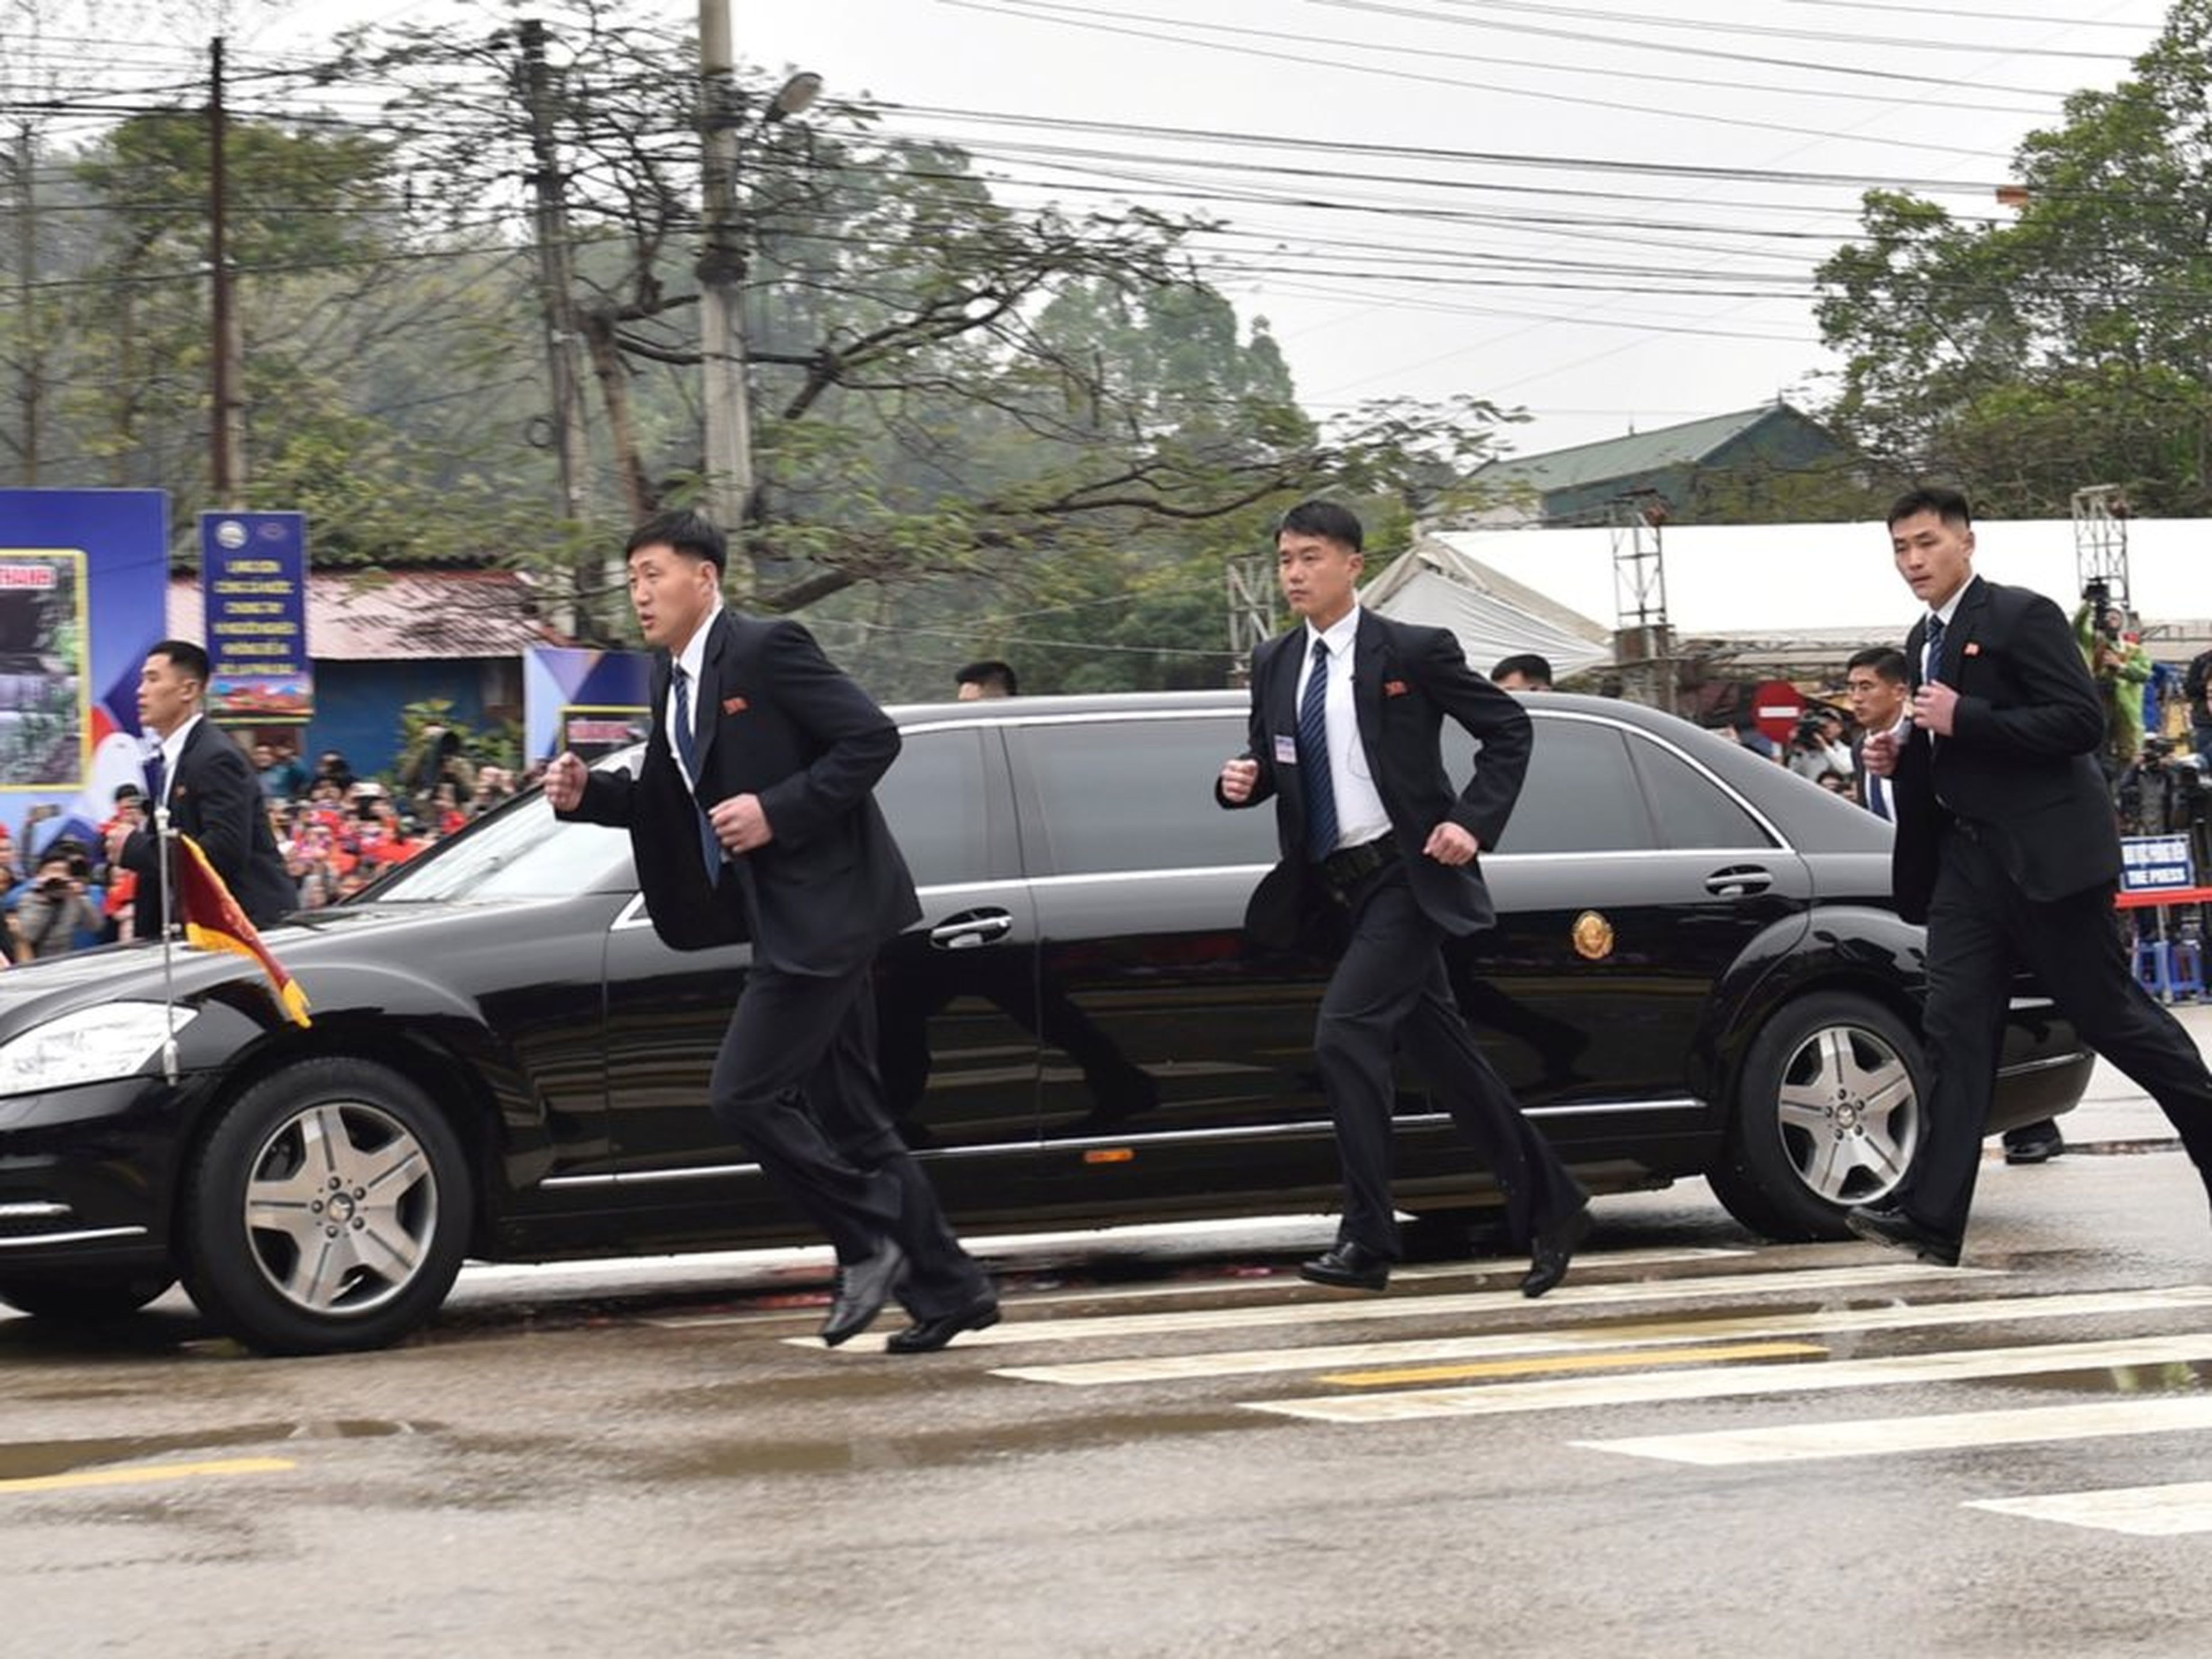 Guardaespaldas norcoreanos corriendo junto a una limusina que lleva al líder de Corea del Norte, Kim Jong Un, a su llegada a la ciudad fronteriza con China en Dong Dang, Vietnam, el 26 de febrero de 2019